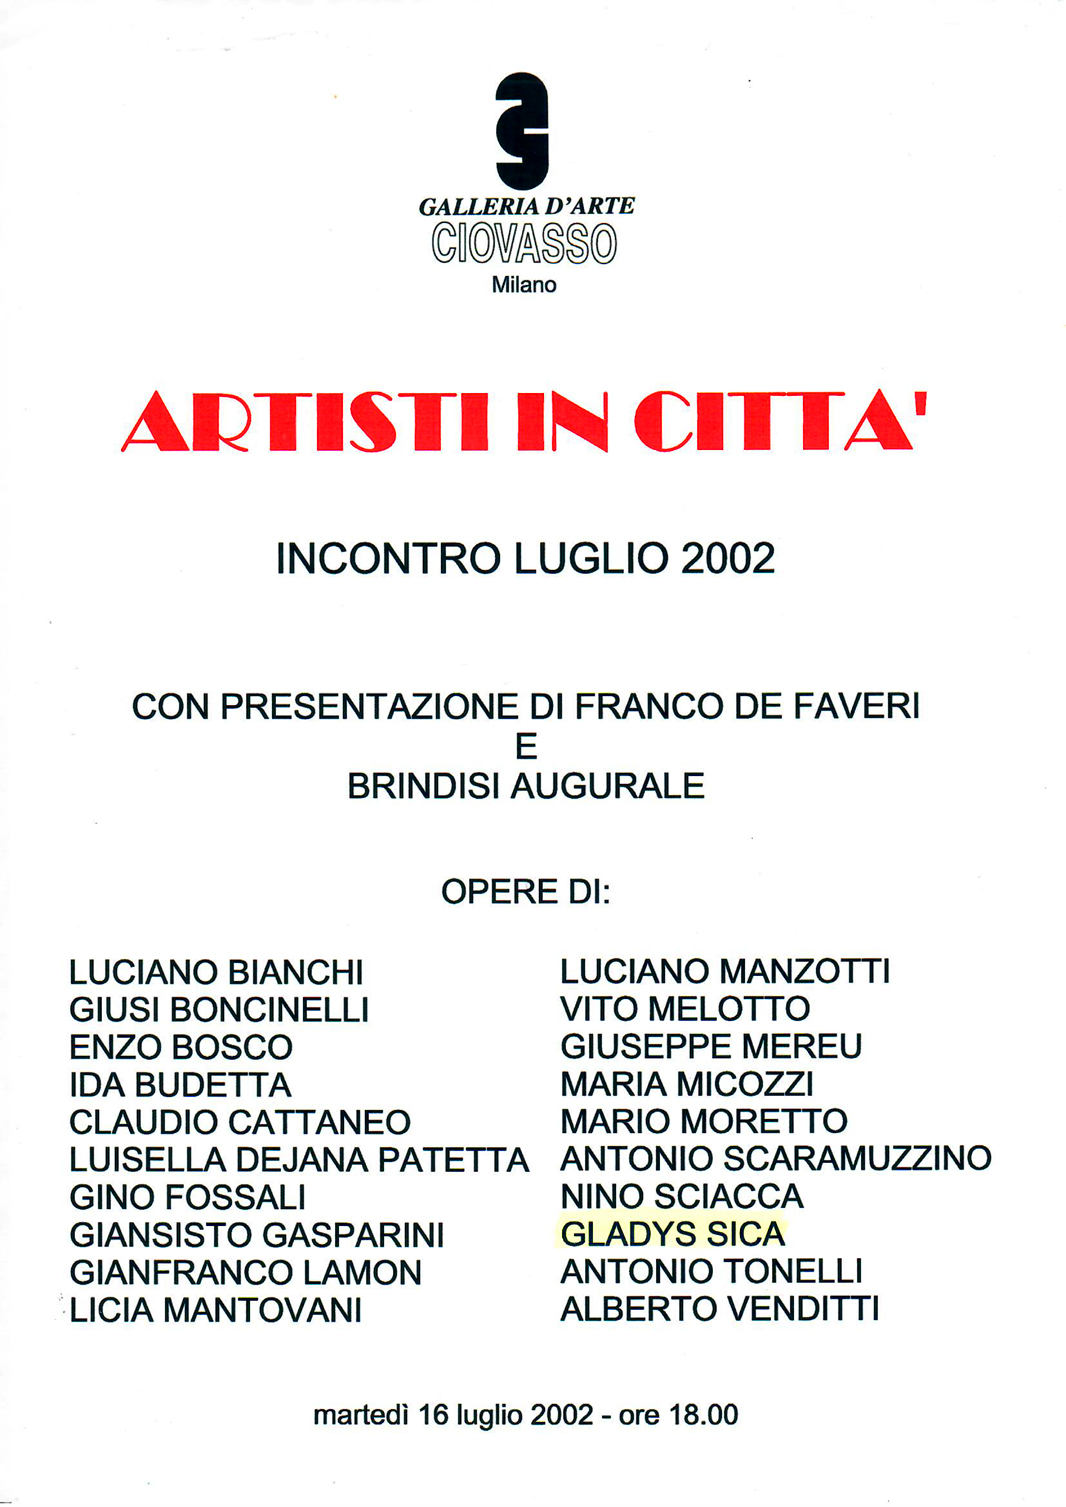 2002 - Collettiva, 'Artisti in Città', Galleria d'arte 'Ciovasso', fra gli artisti Vito Melotto, Antonio Tonelli, ecc. Milano.